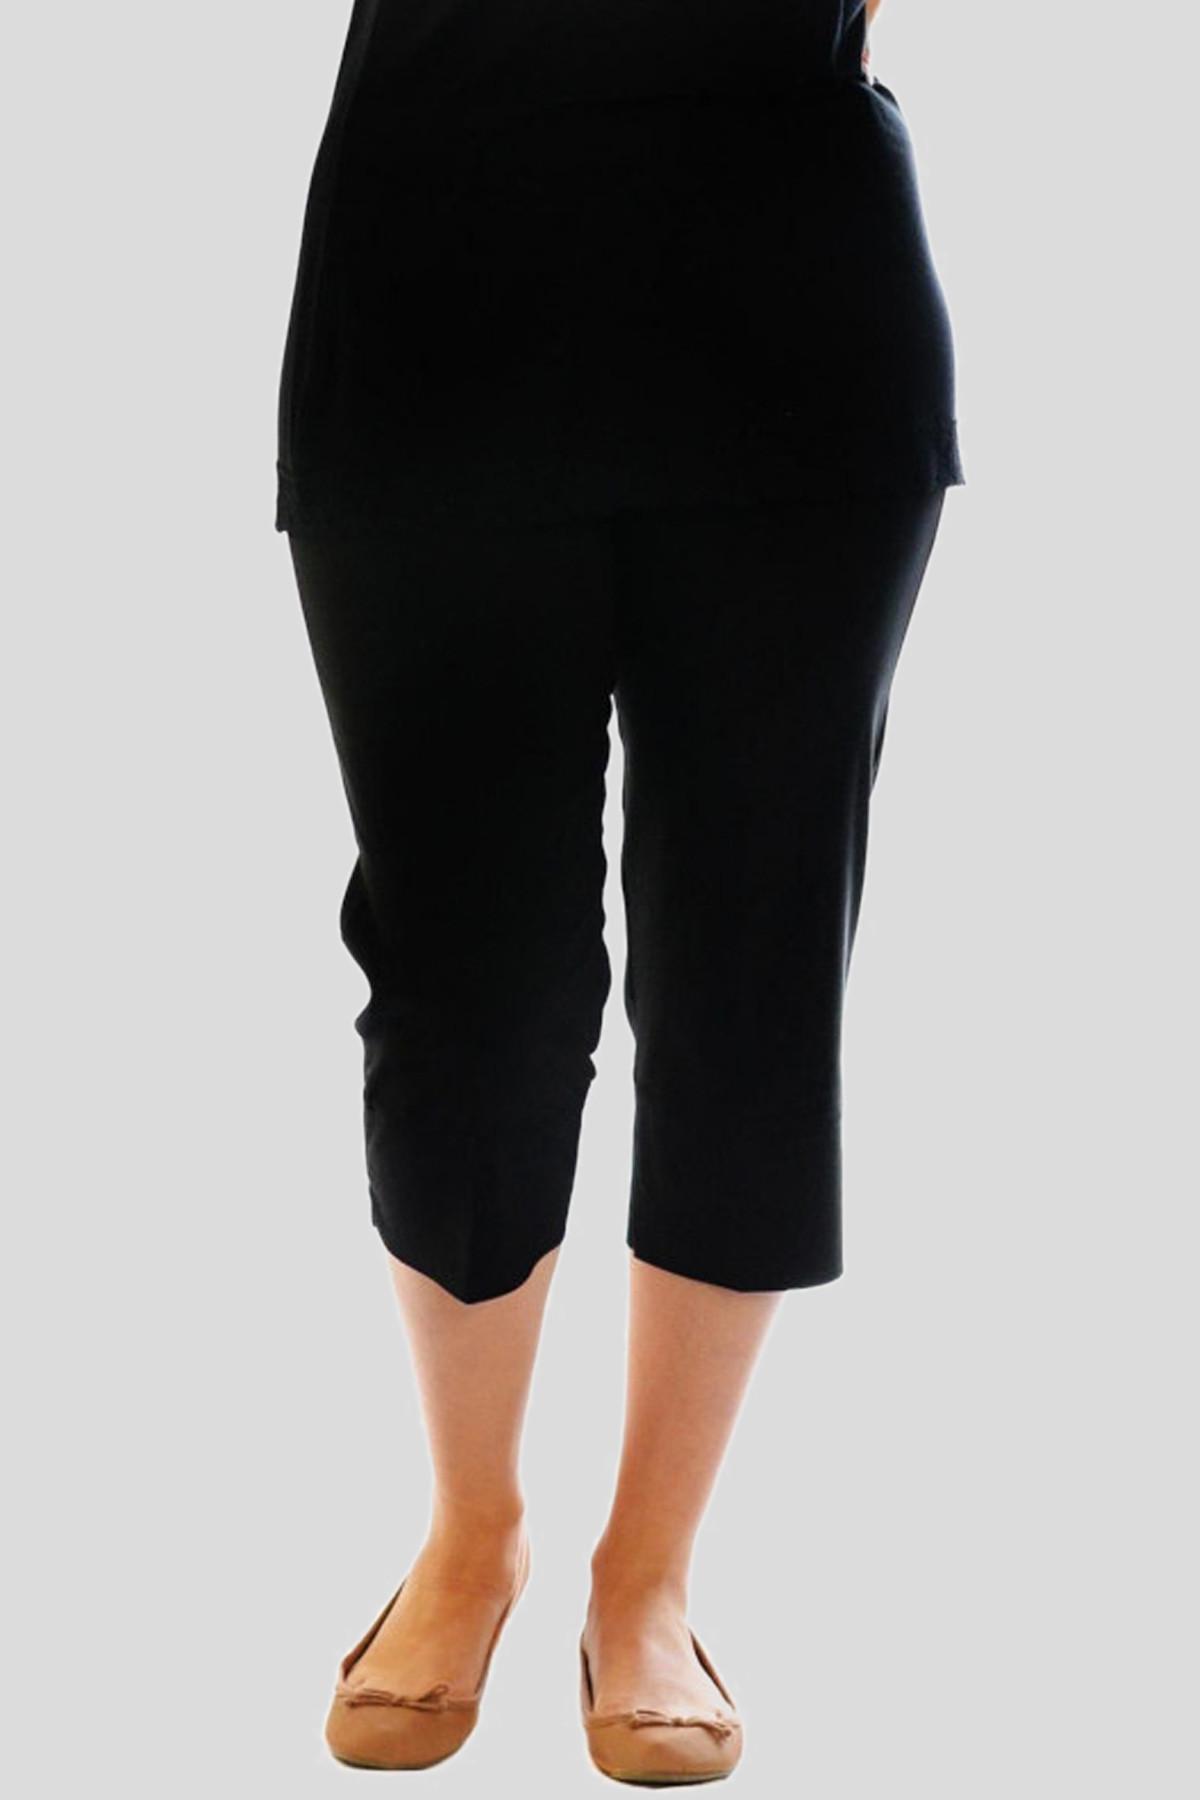 Janelle Plus Size 3/4 Length Capri Trousers Pants Shorts 16-24